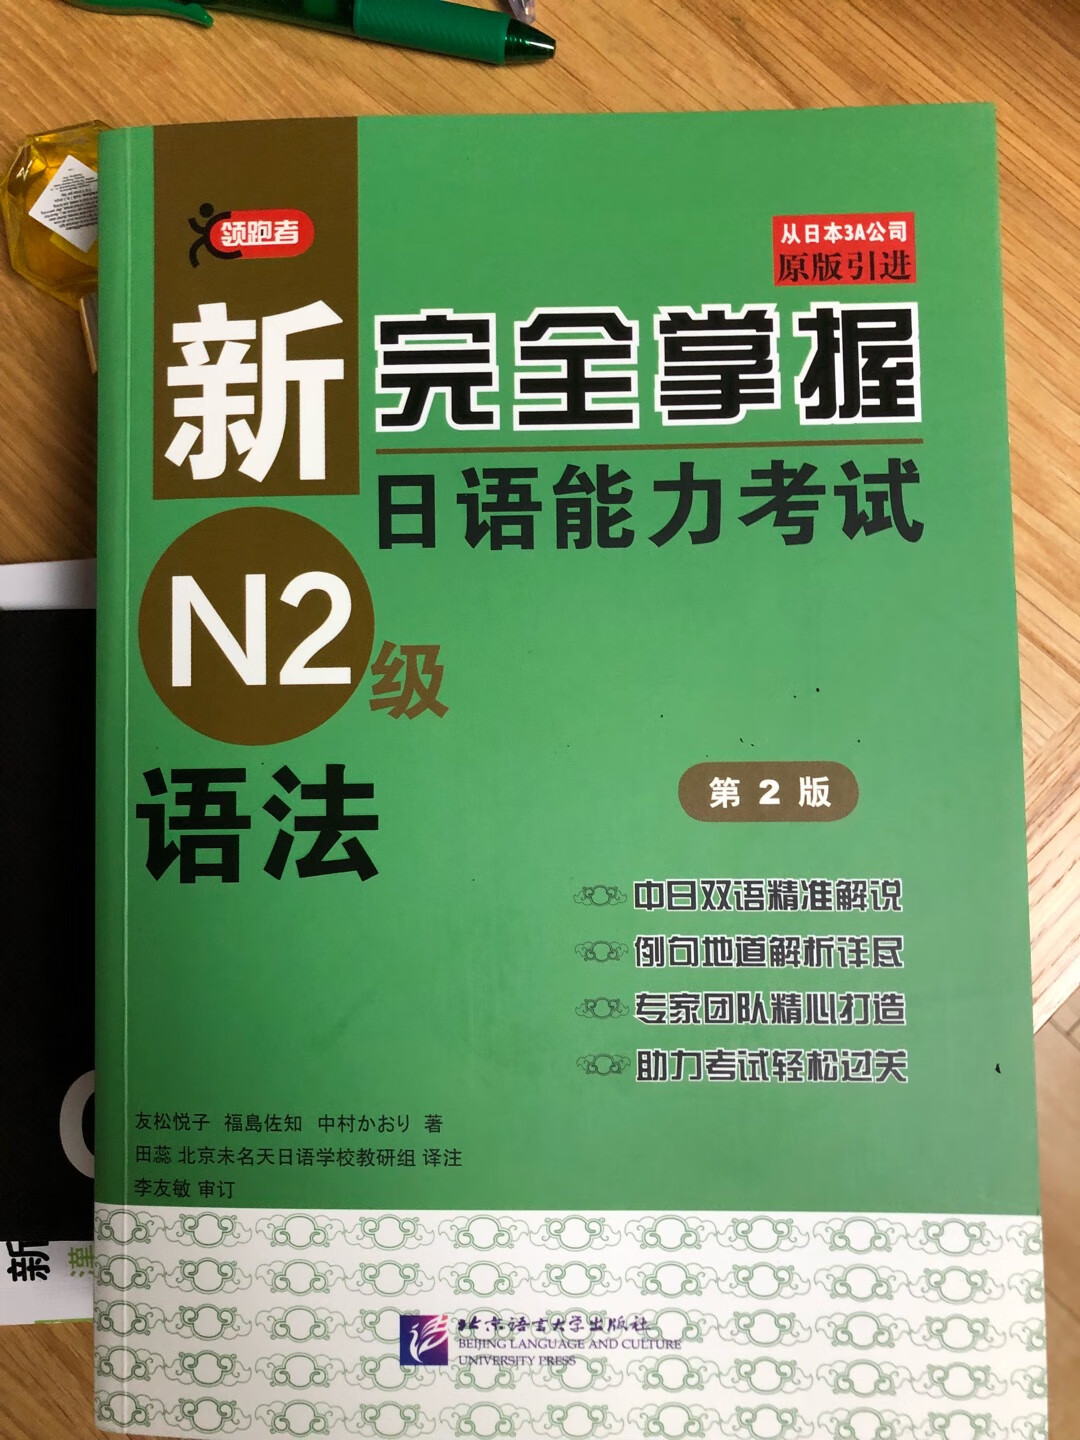 这套书的语法部分讲的挺详细的，推荐购买学习